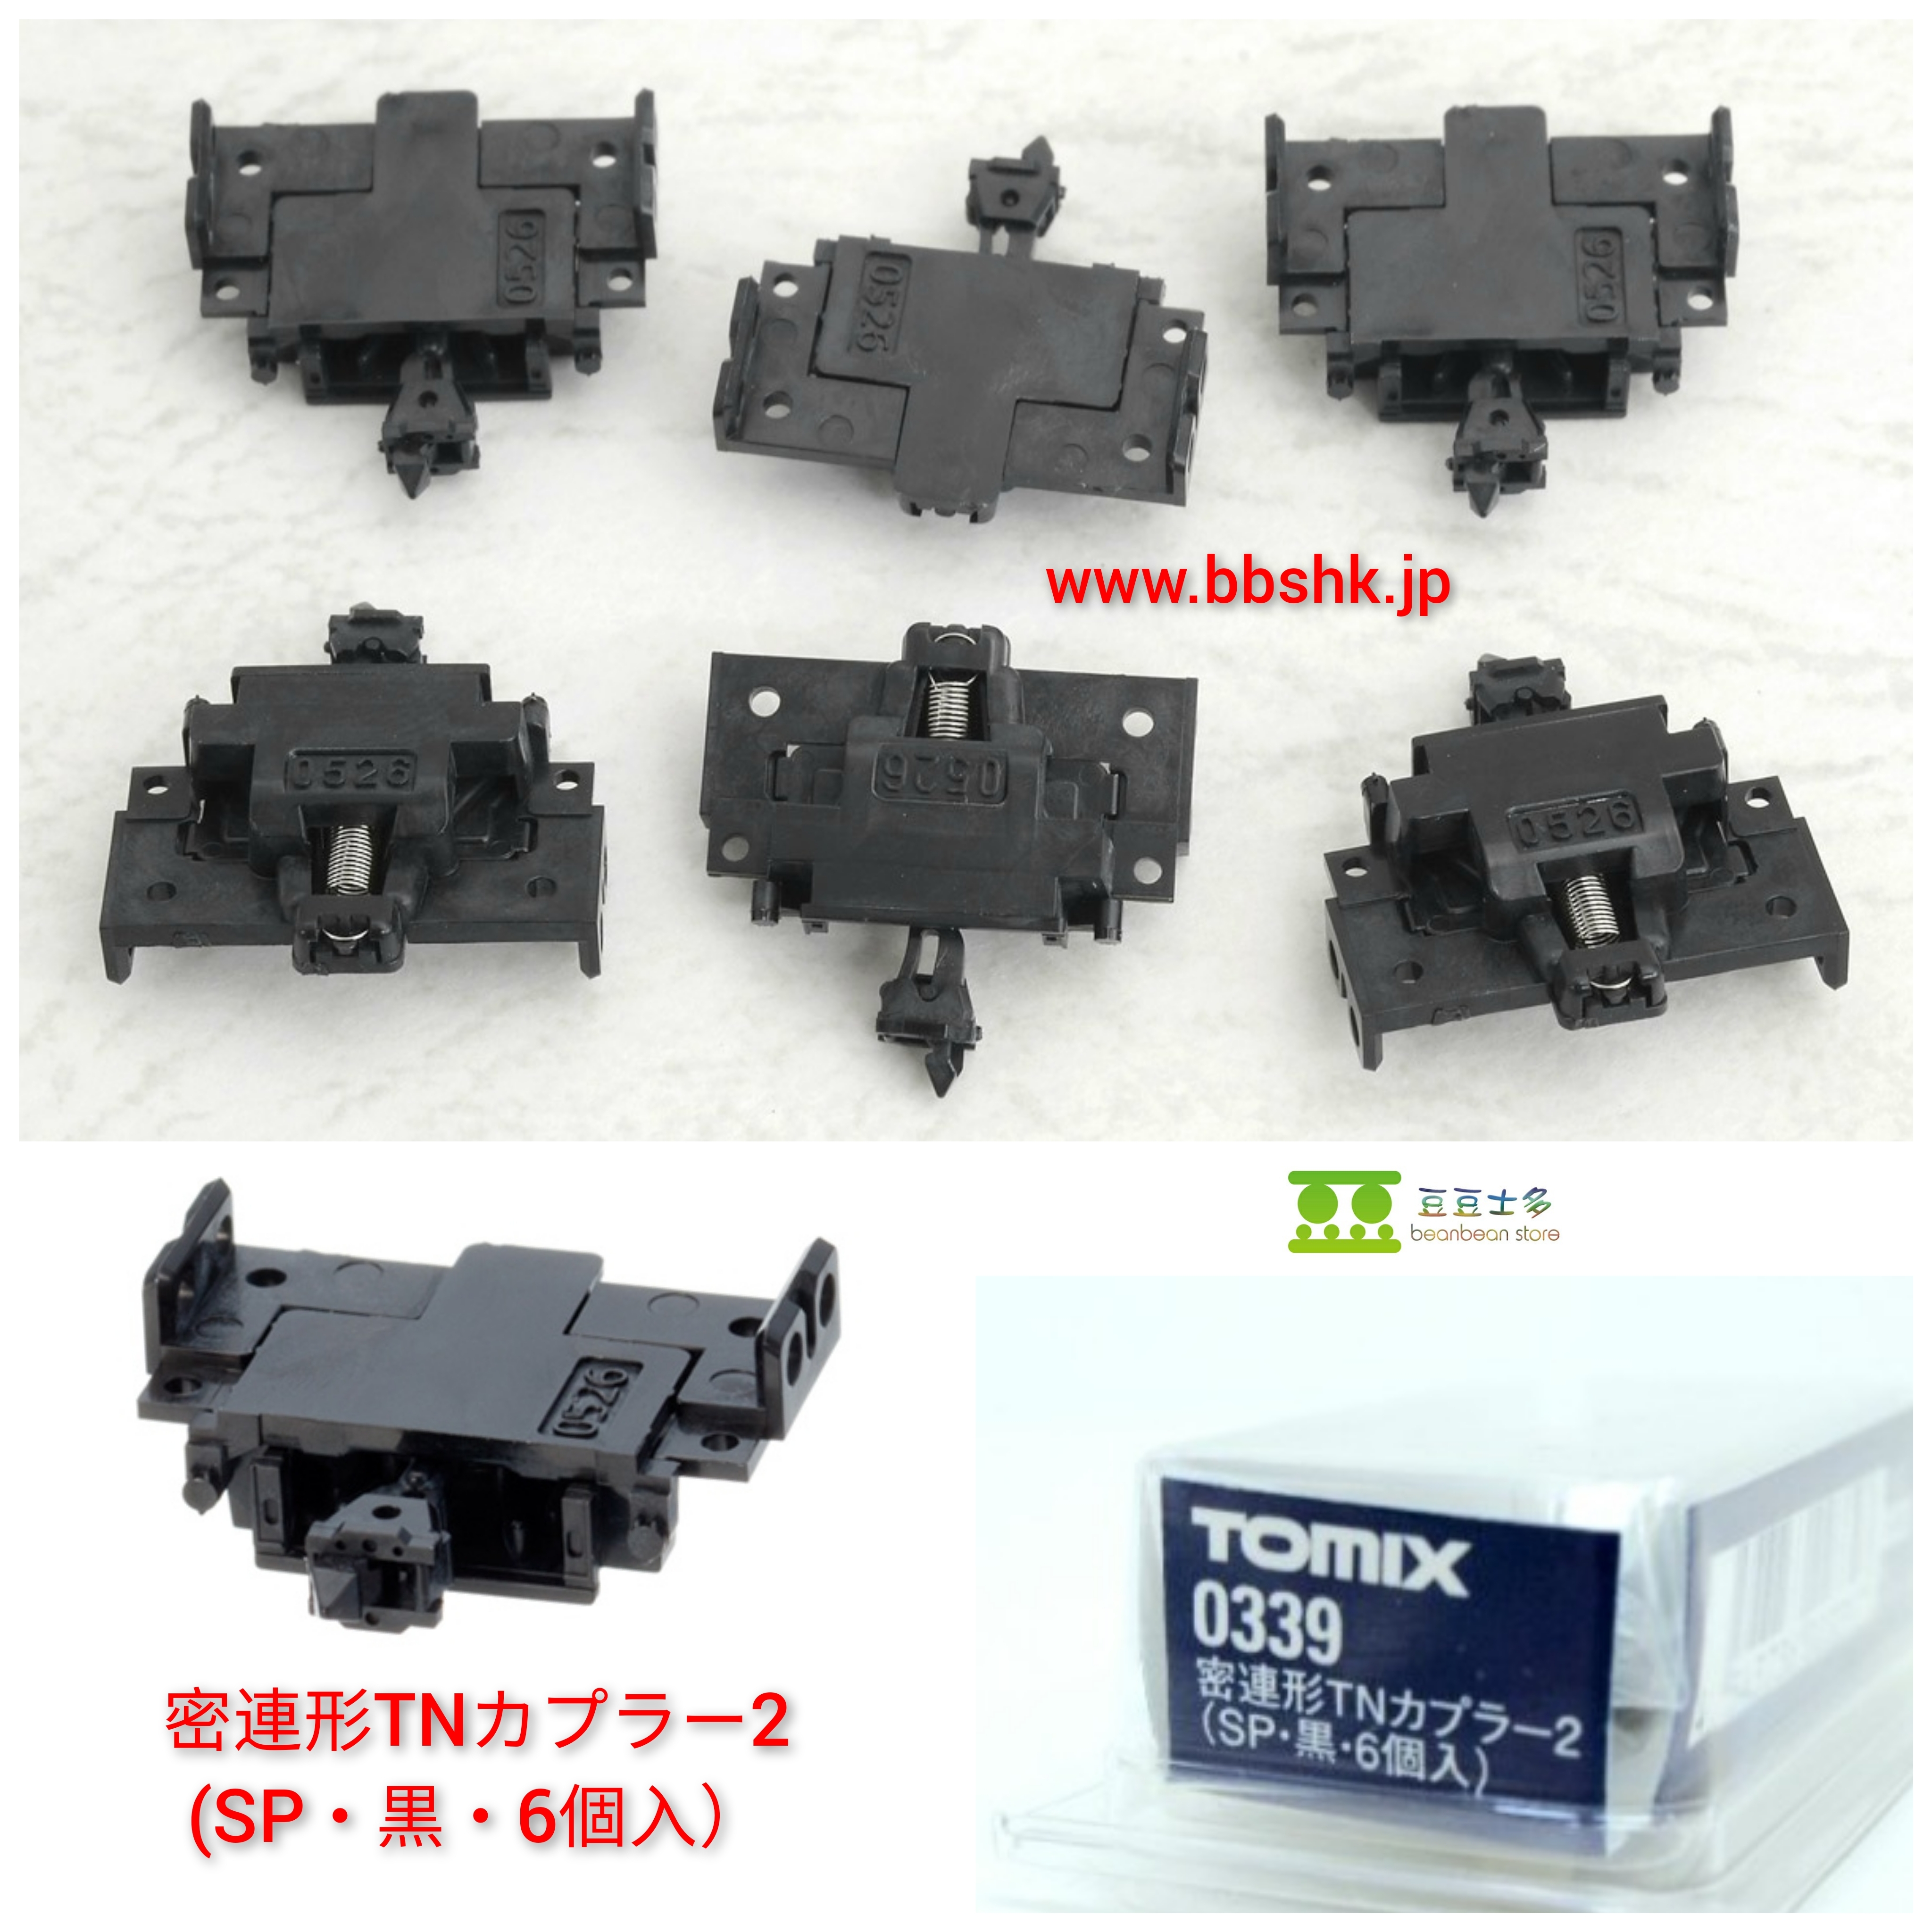 TOMIX 0339 密連形TNカプラー2 (SP・黒・6個入)